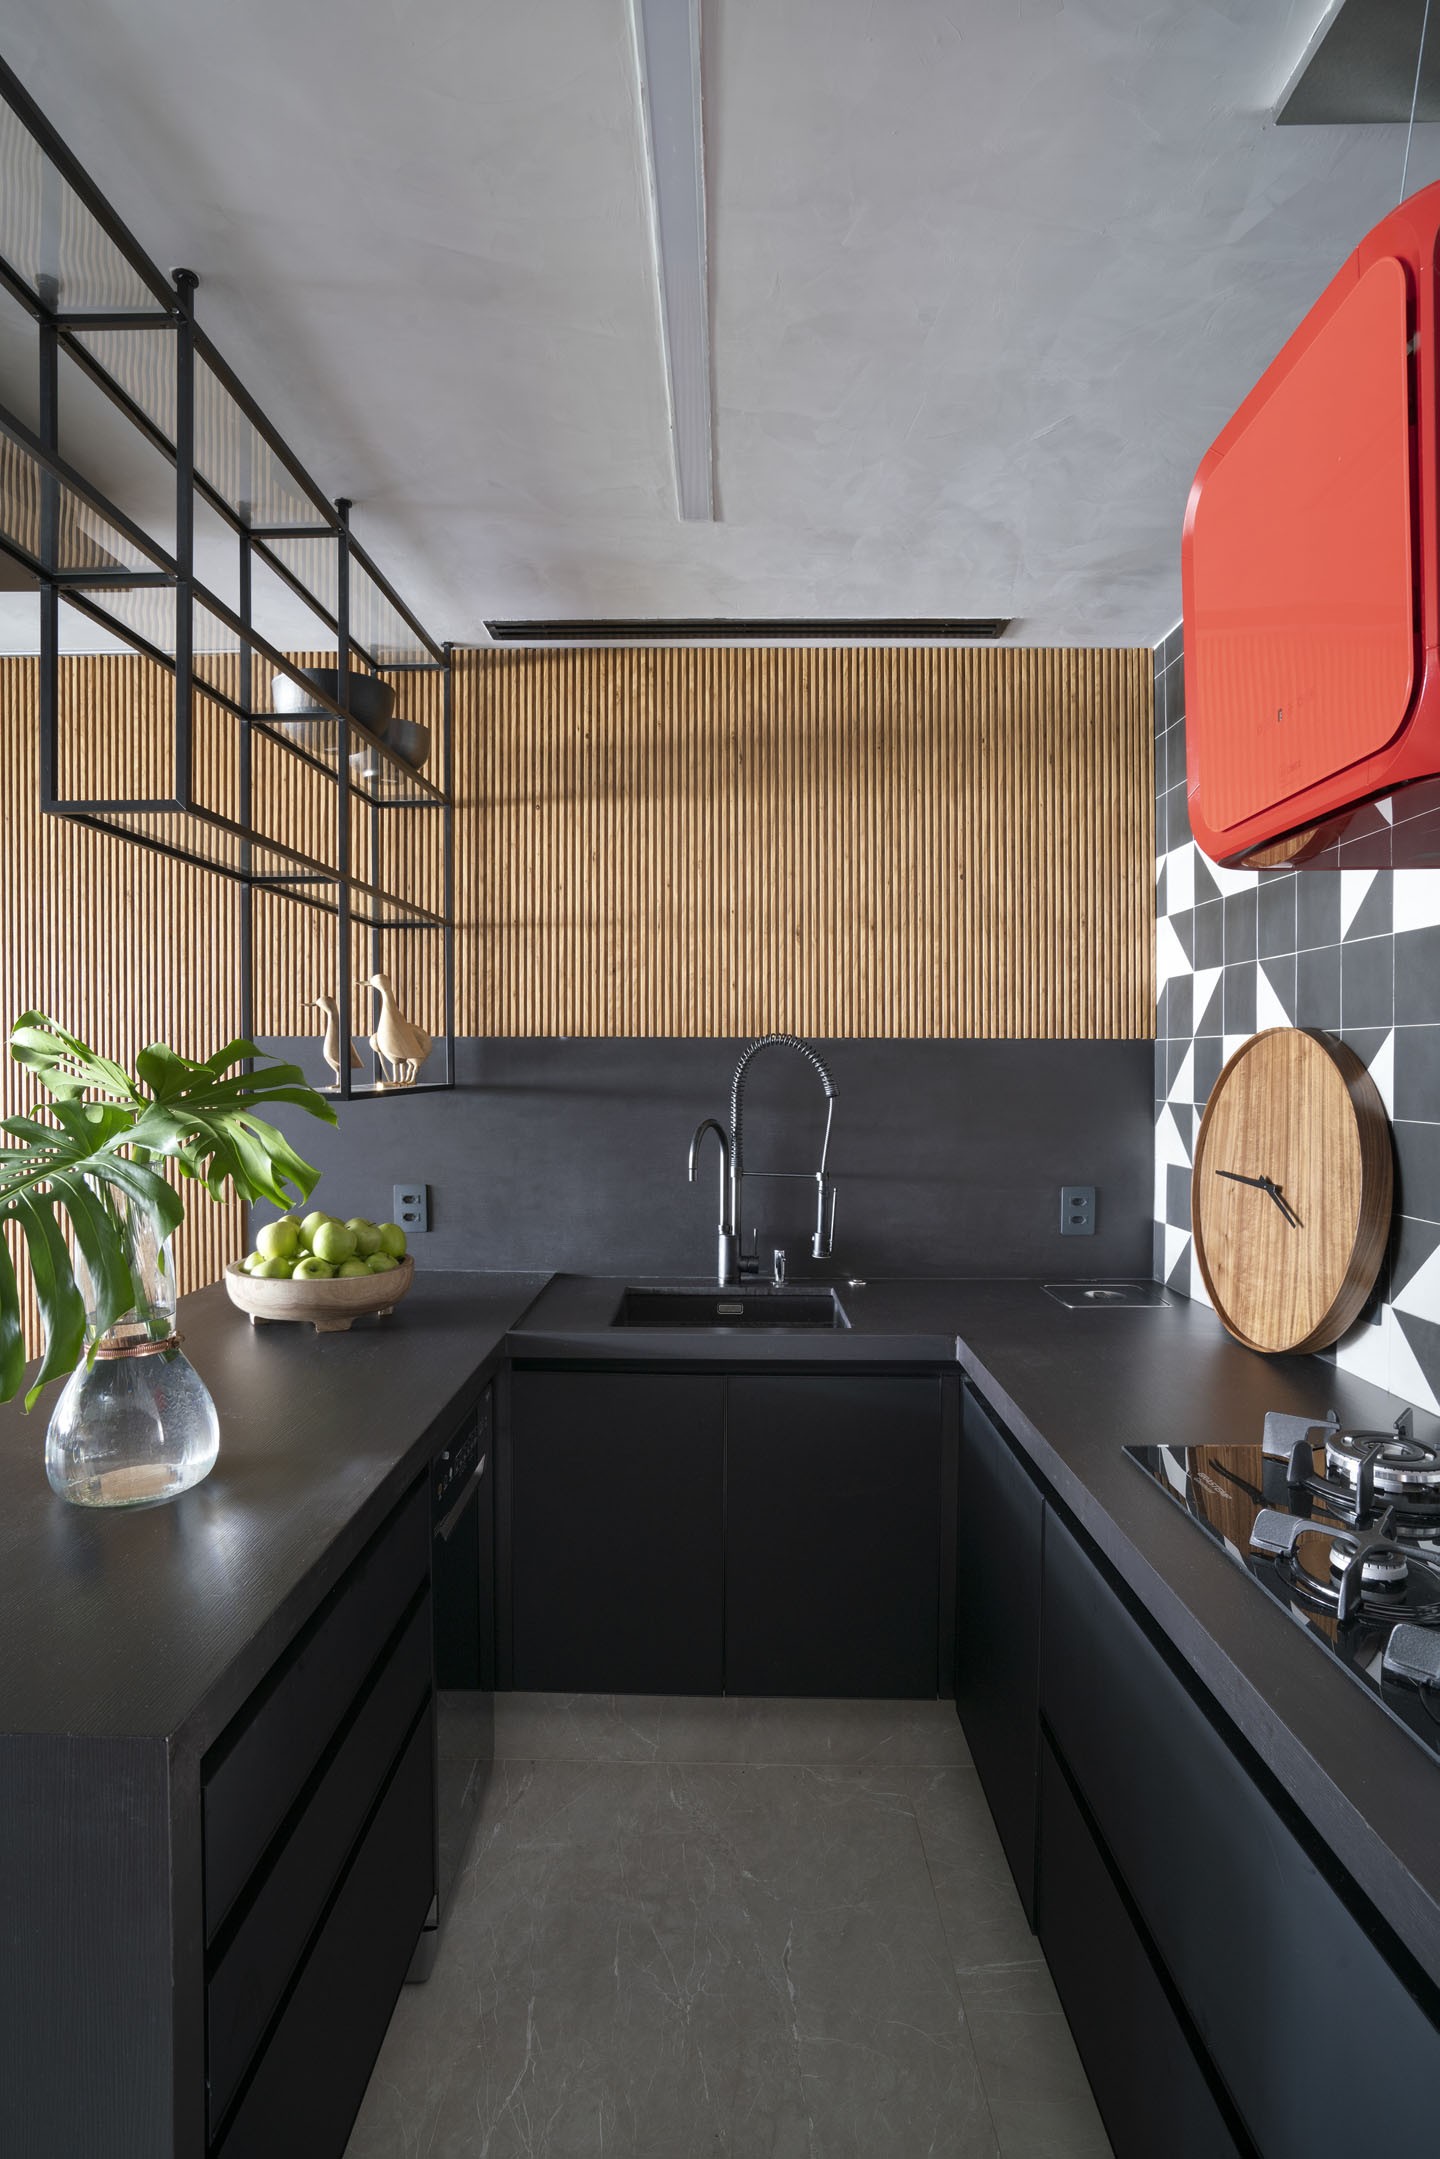 Décor do dia: cozinha integrada em preto, vermelho, cinza e madeira (Foto: Juliano Colodeti/MCA Estúdio)